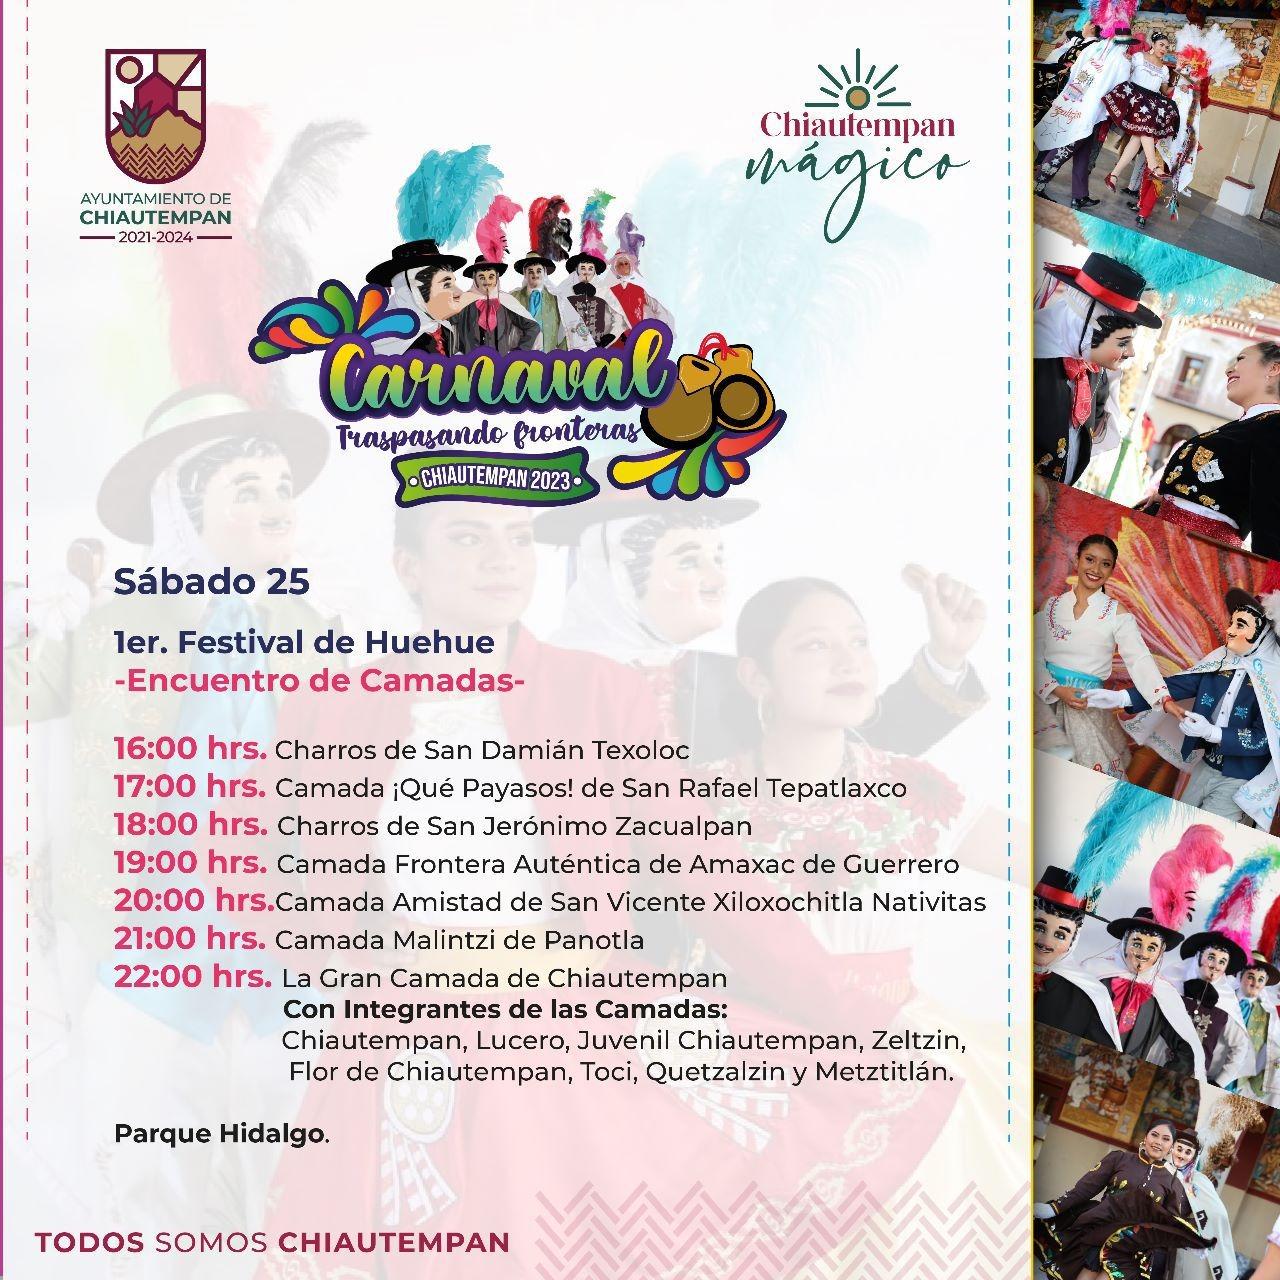 No te pierdas este sábado el 1er Festival del Huehue 2023 en Chiautempan